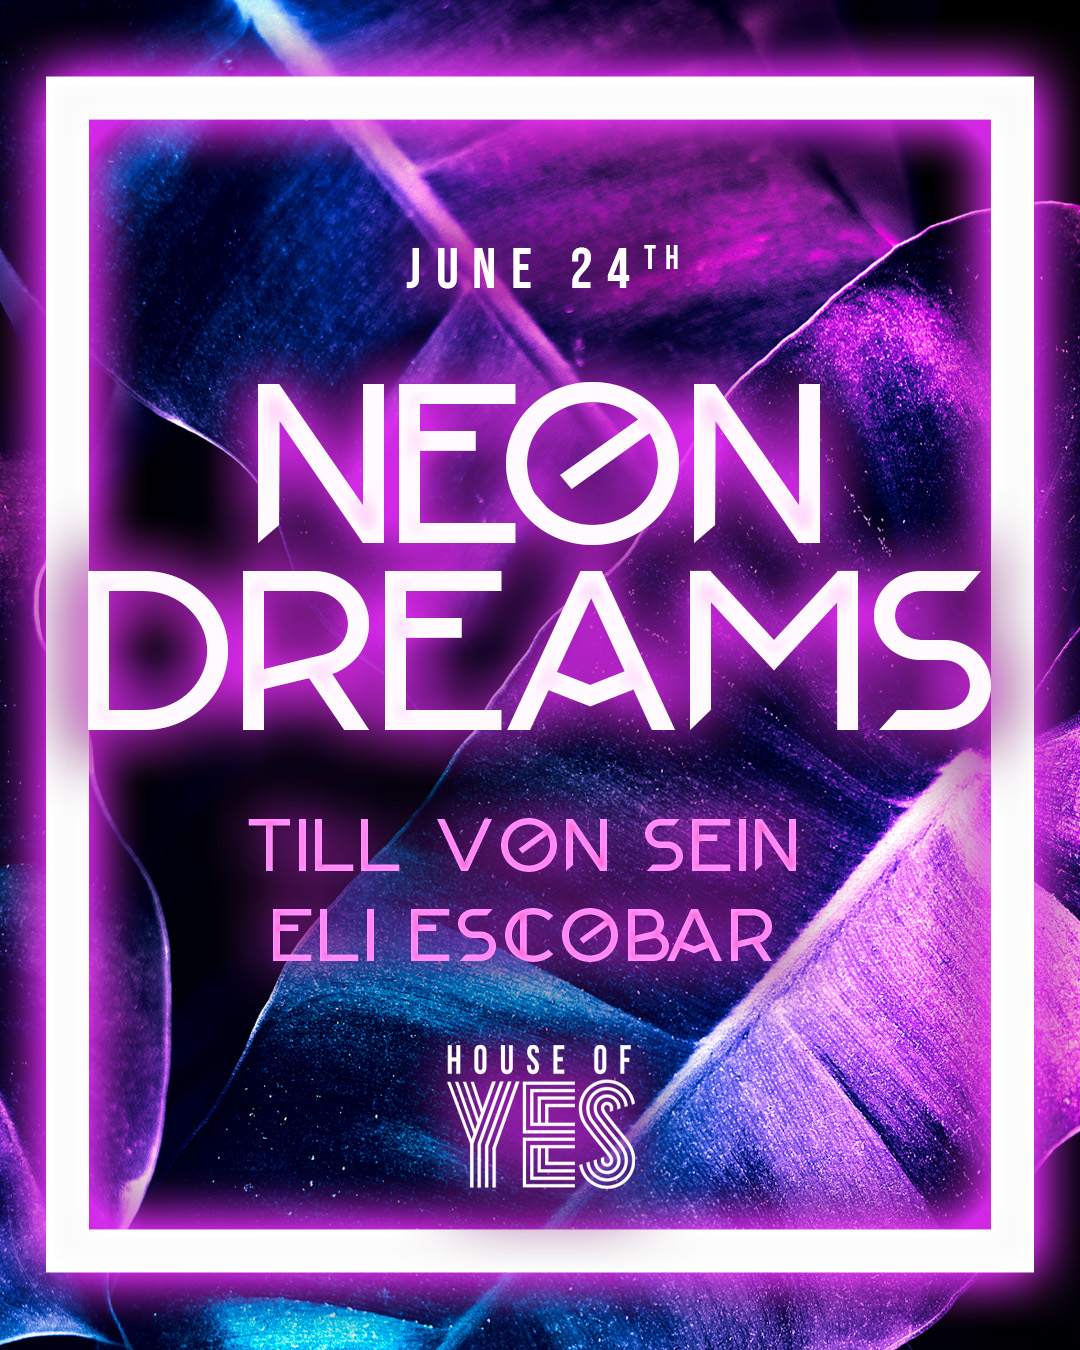 NEON DREAMS: Till von Sein | Eli Escobar - フライヤー表